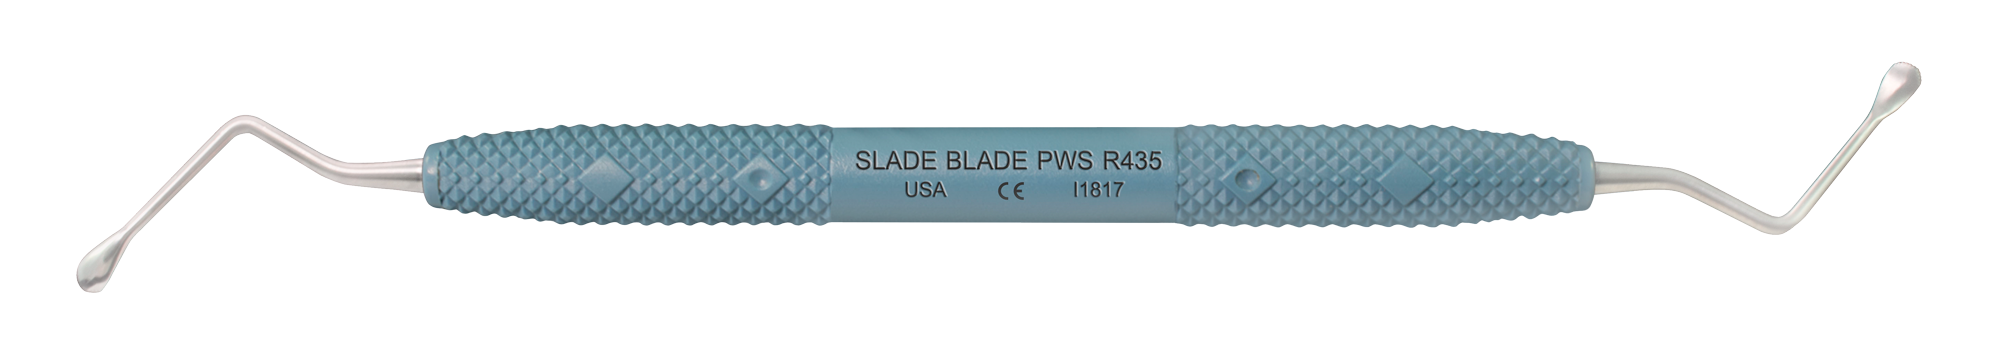 PDT Slade Blade (Wide - Serrated)